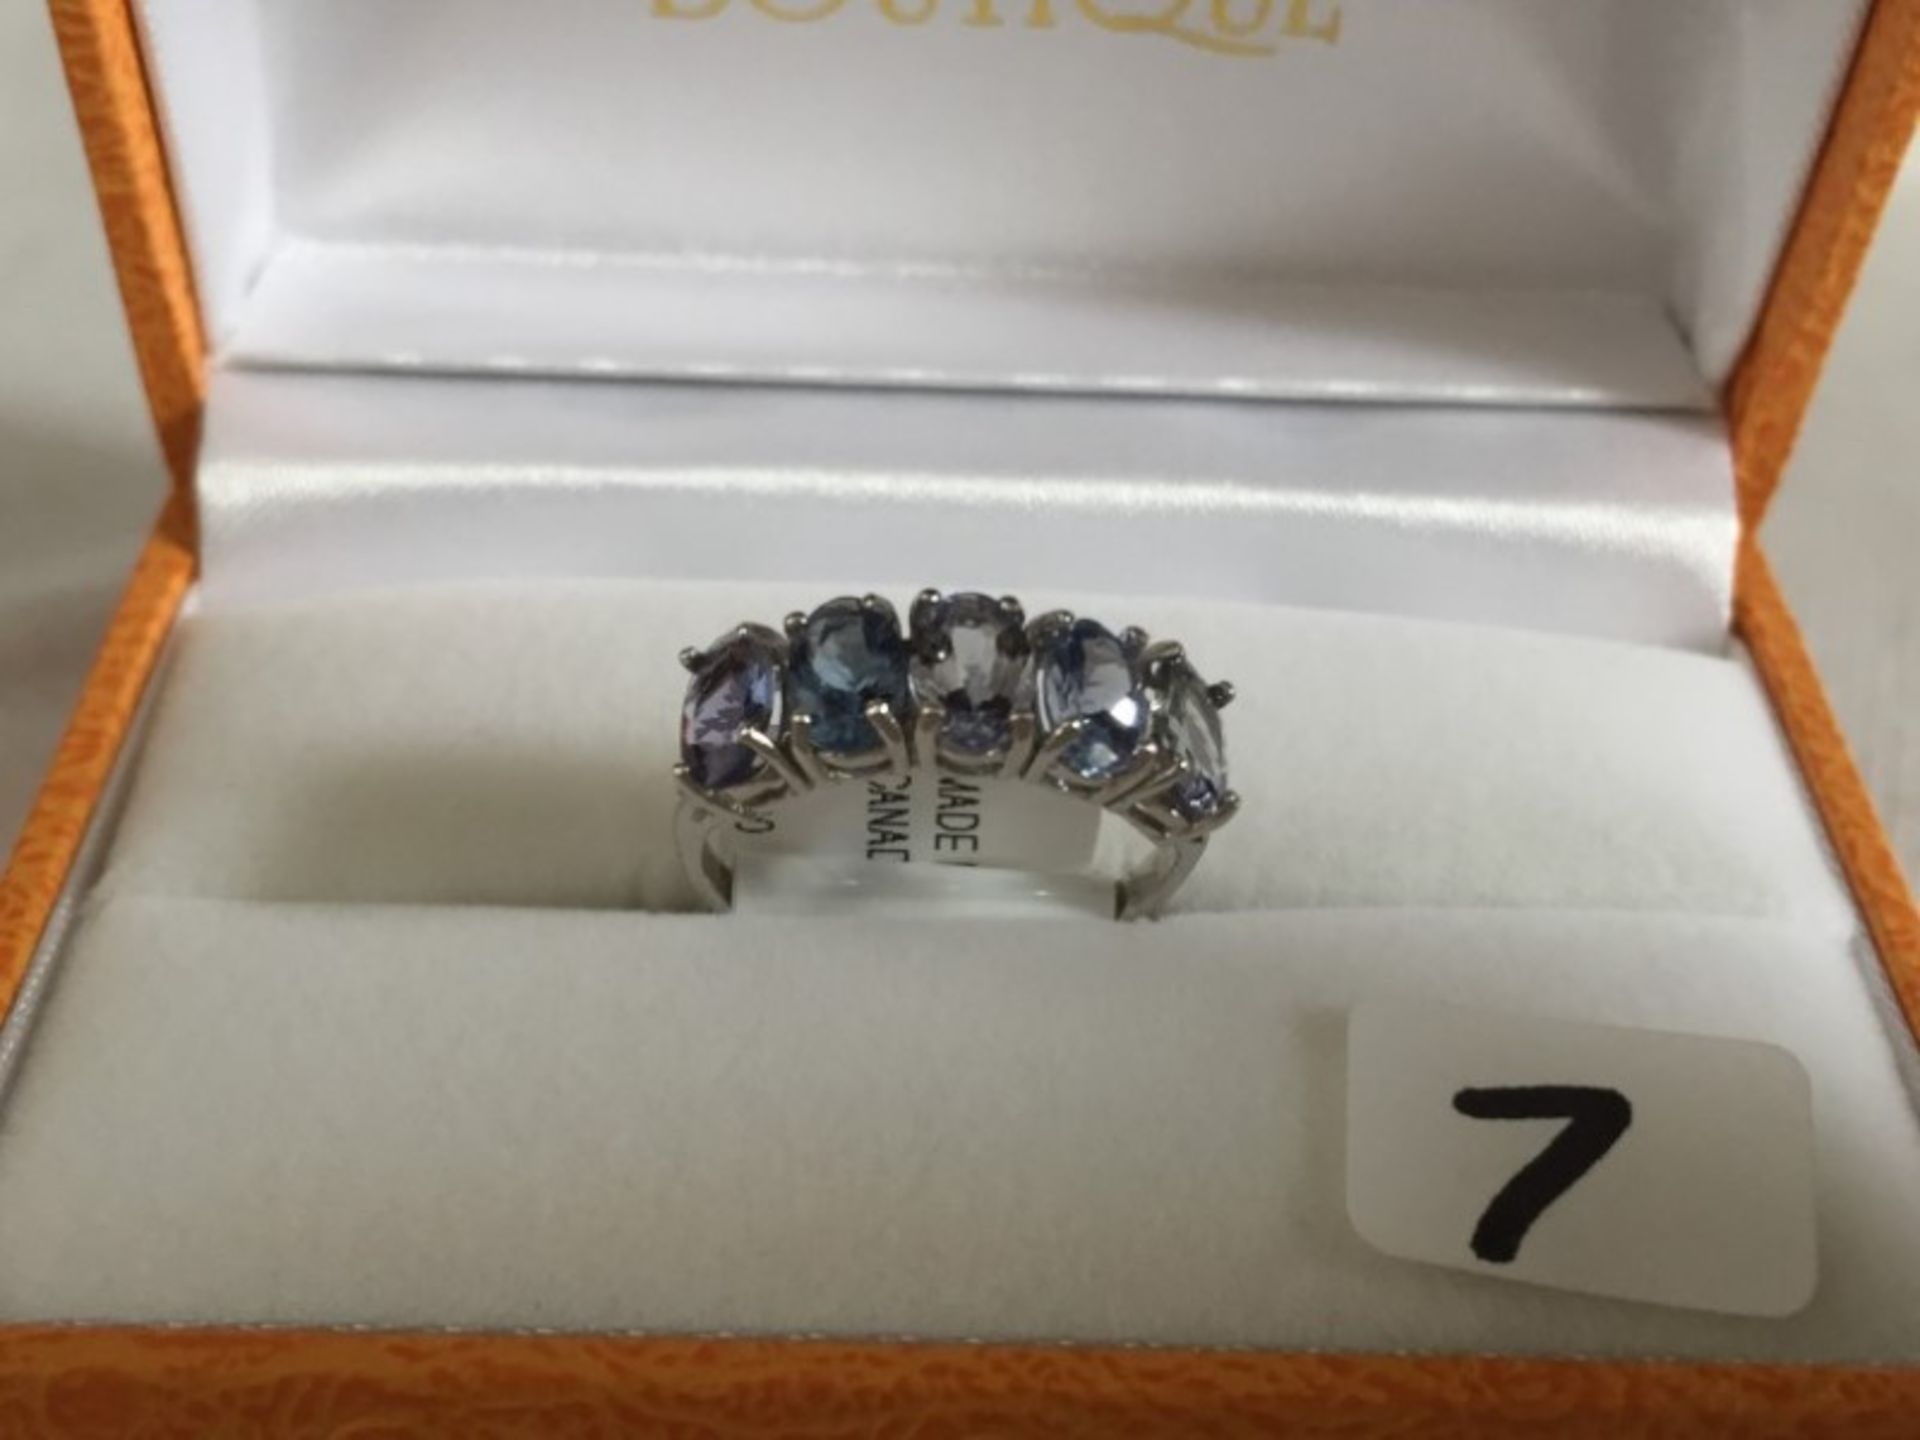 ladies 10K gold 25 carat Tanzanite ring - $1500 appraisal - Image 2 of 3